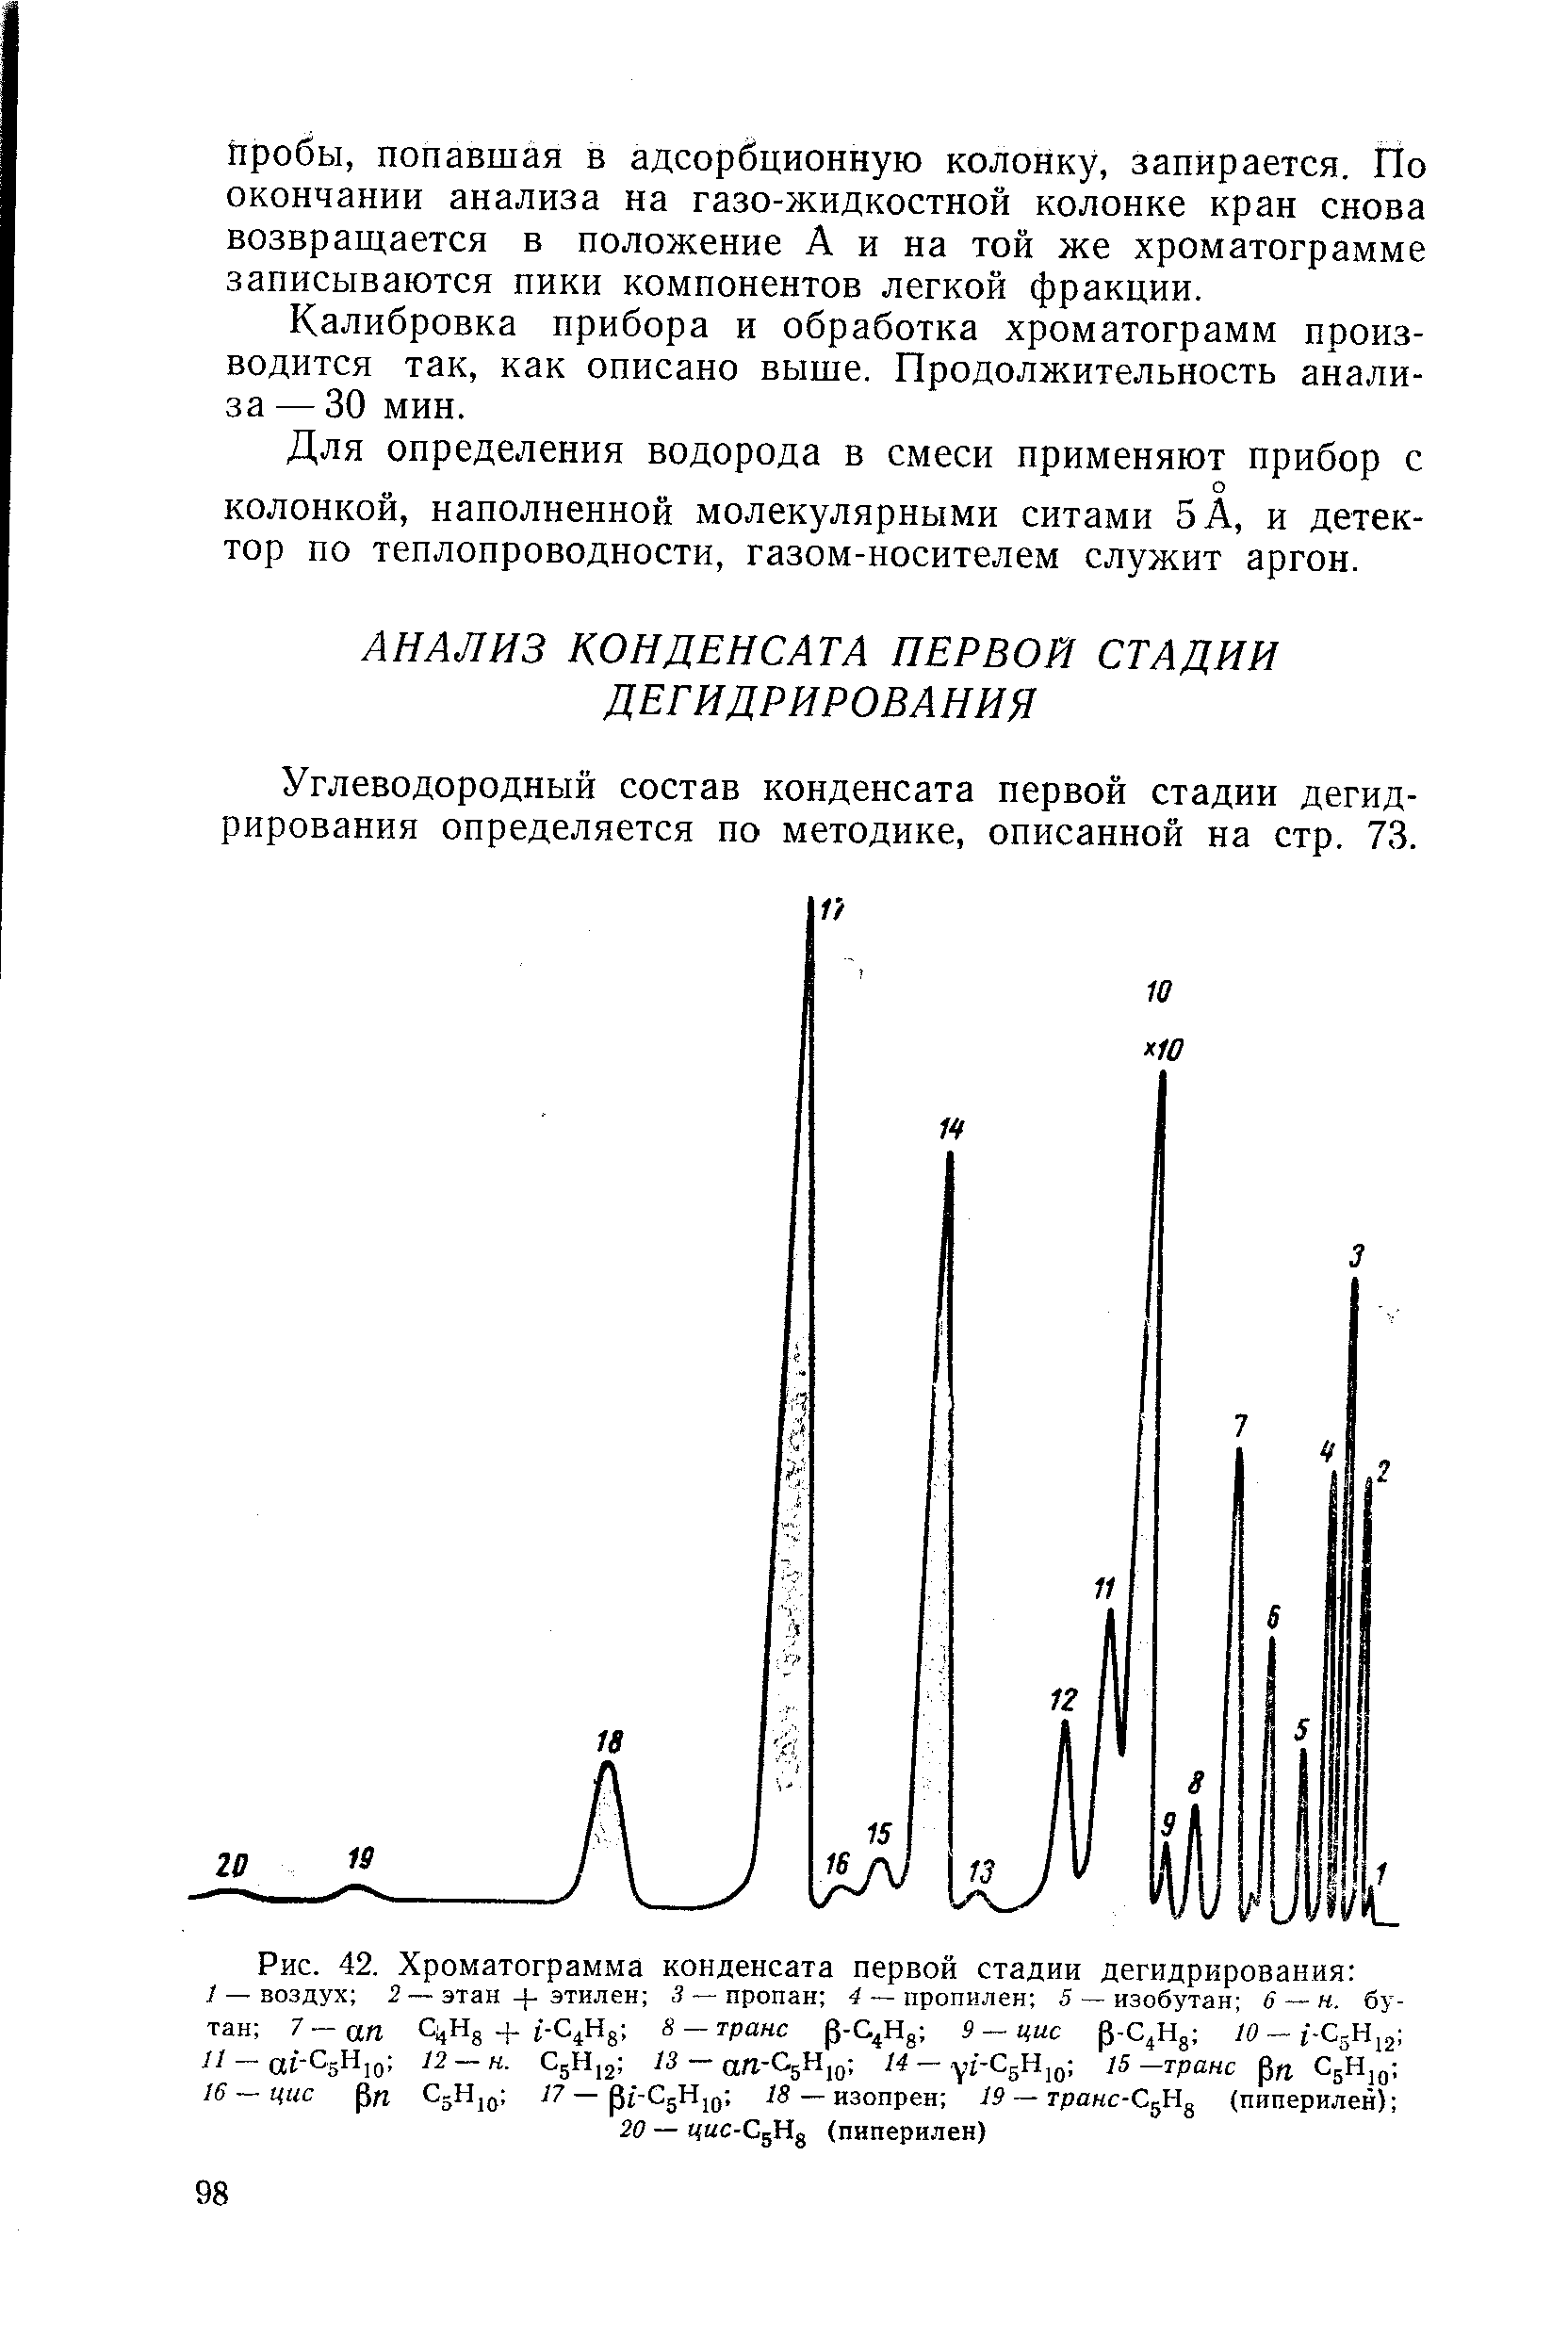 Углеводородный состав конденсата первой стадии дегидрирования определяется по методике, описанной на стр. 73.